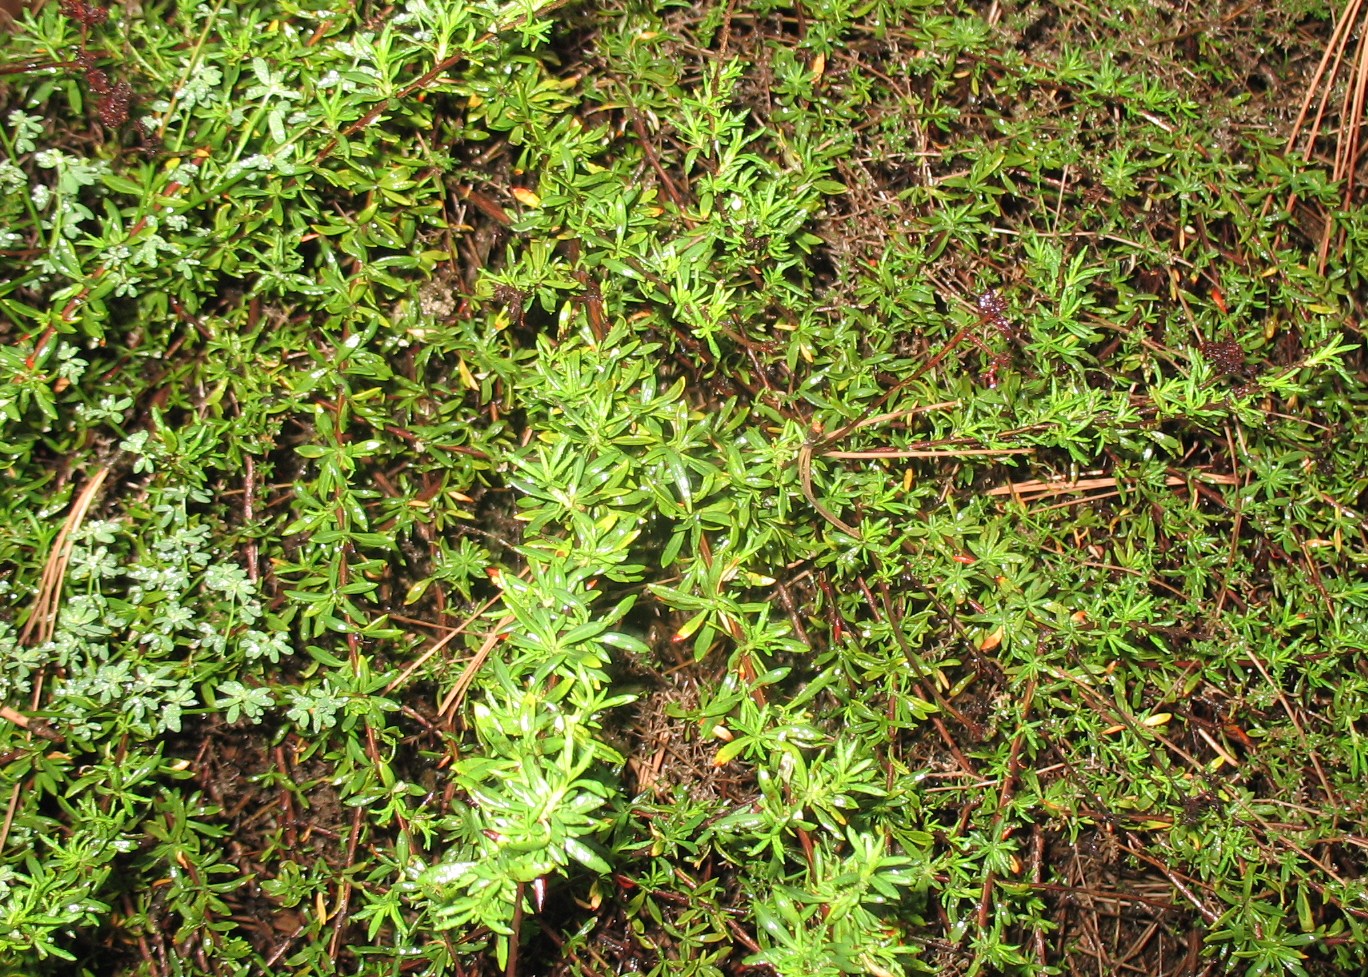 Eriogonum fasciculatum / California Buckwheat